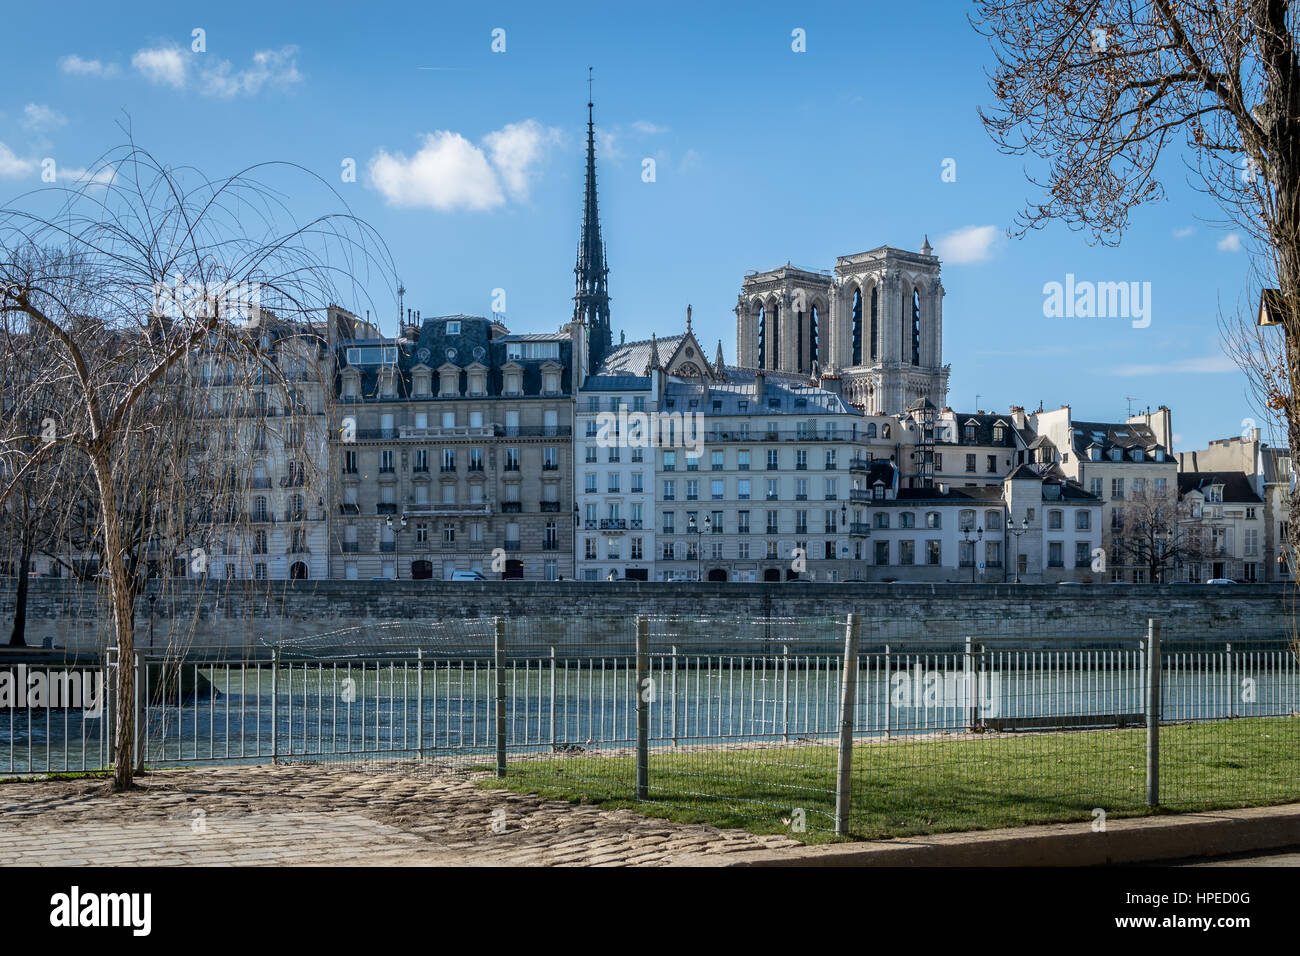 Notre Dame de Paris sous le soleil, photo prise des quais de Seine, sous un magnifique ciel bleu Banque D'Images